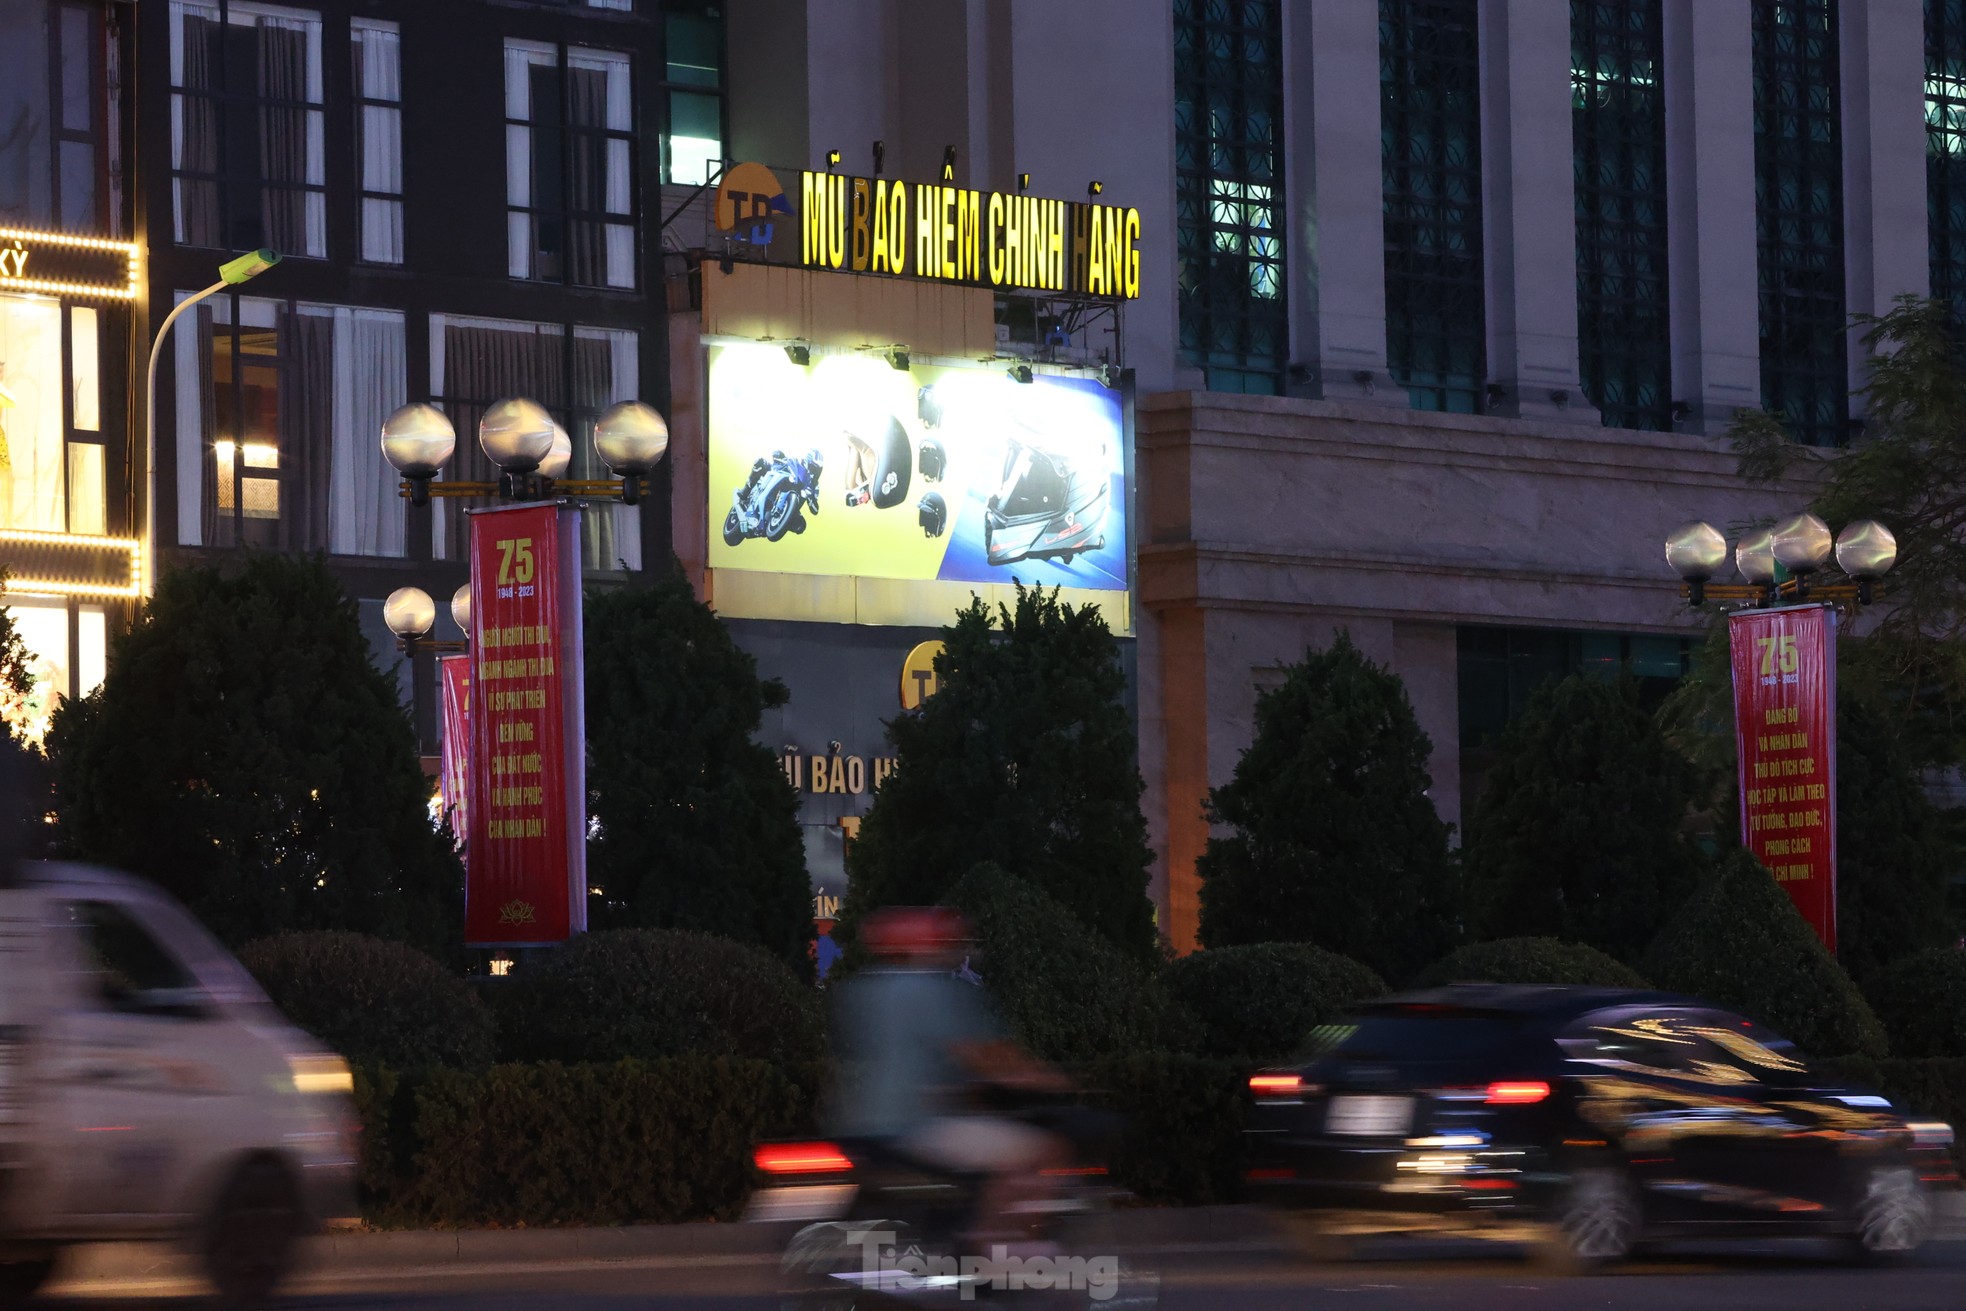 Đường phố Hà Nội bỗng tối om vì phải cắt giảm điện - Ảnh 5.